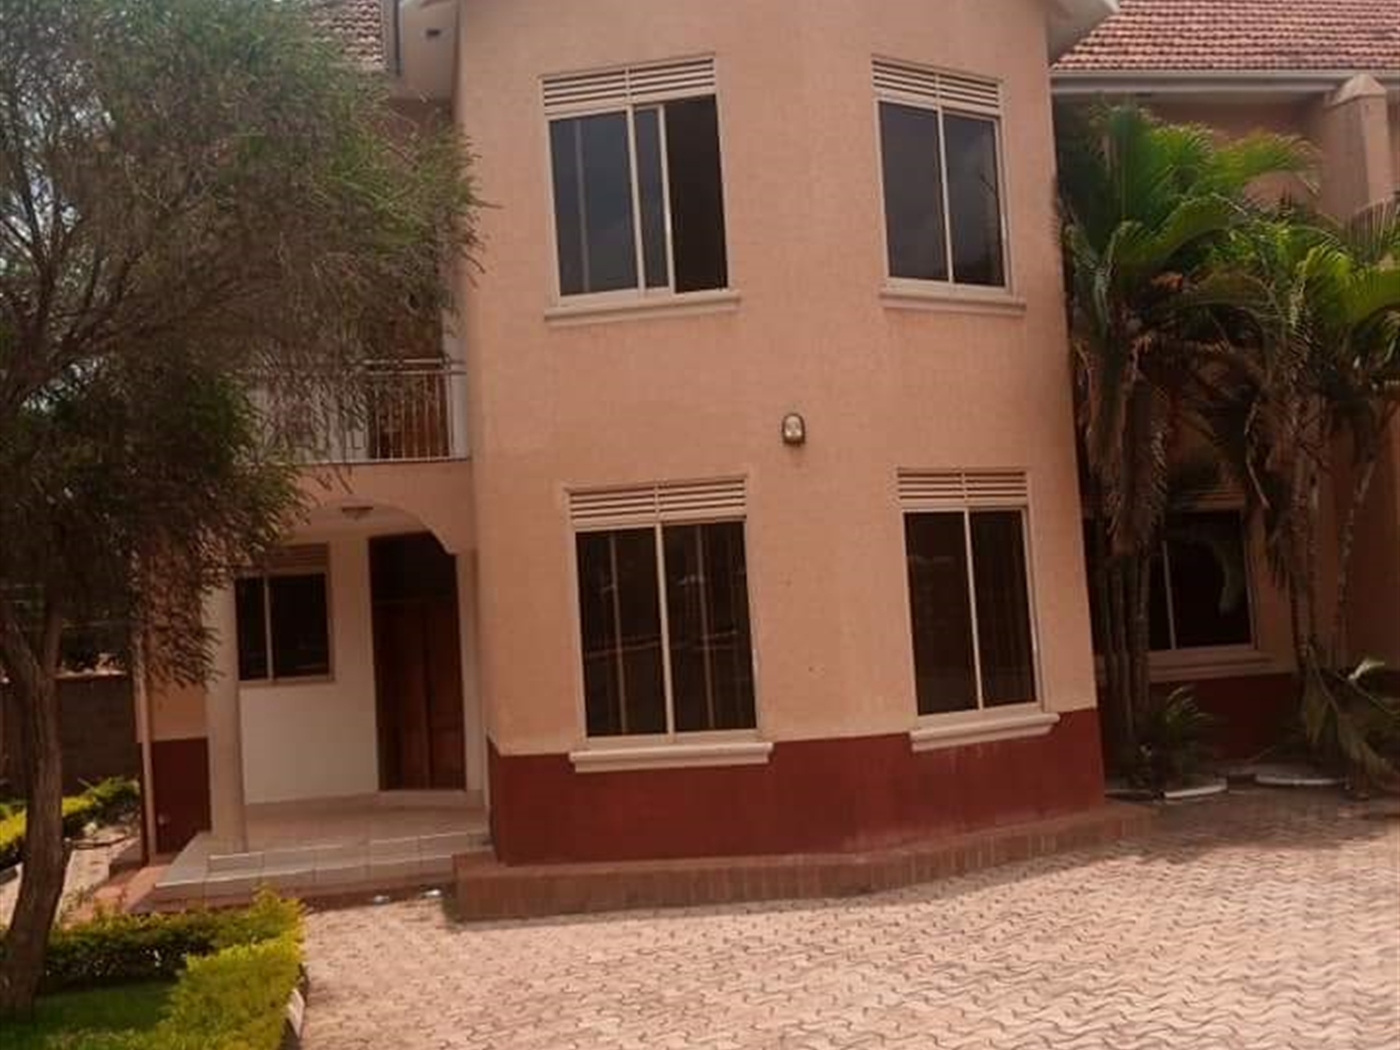 Villa for rent in Bbunga Kampala